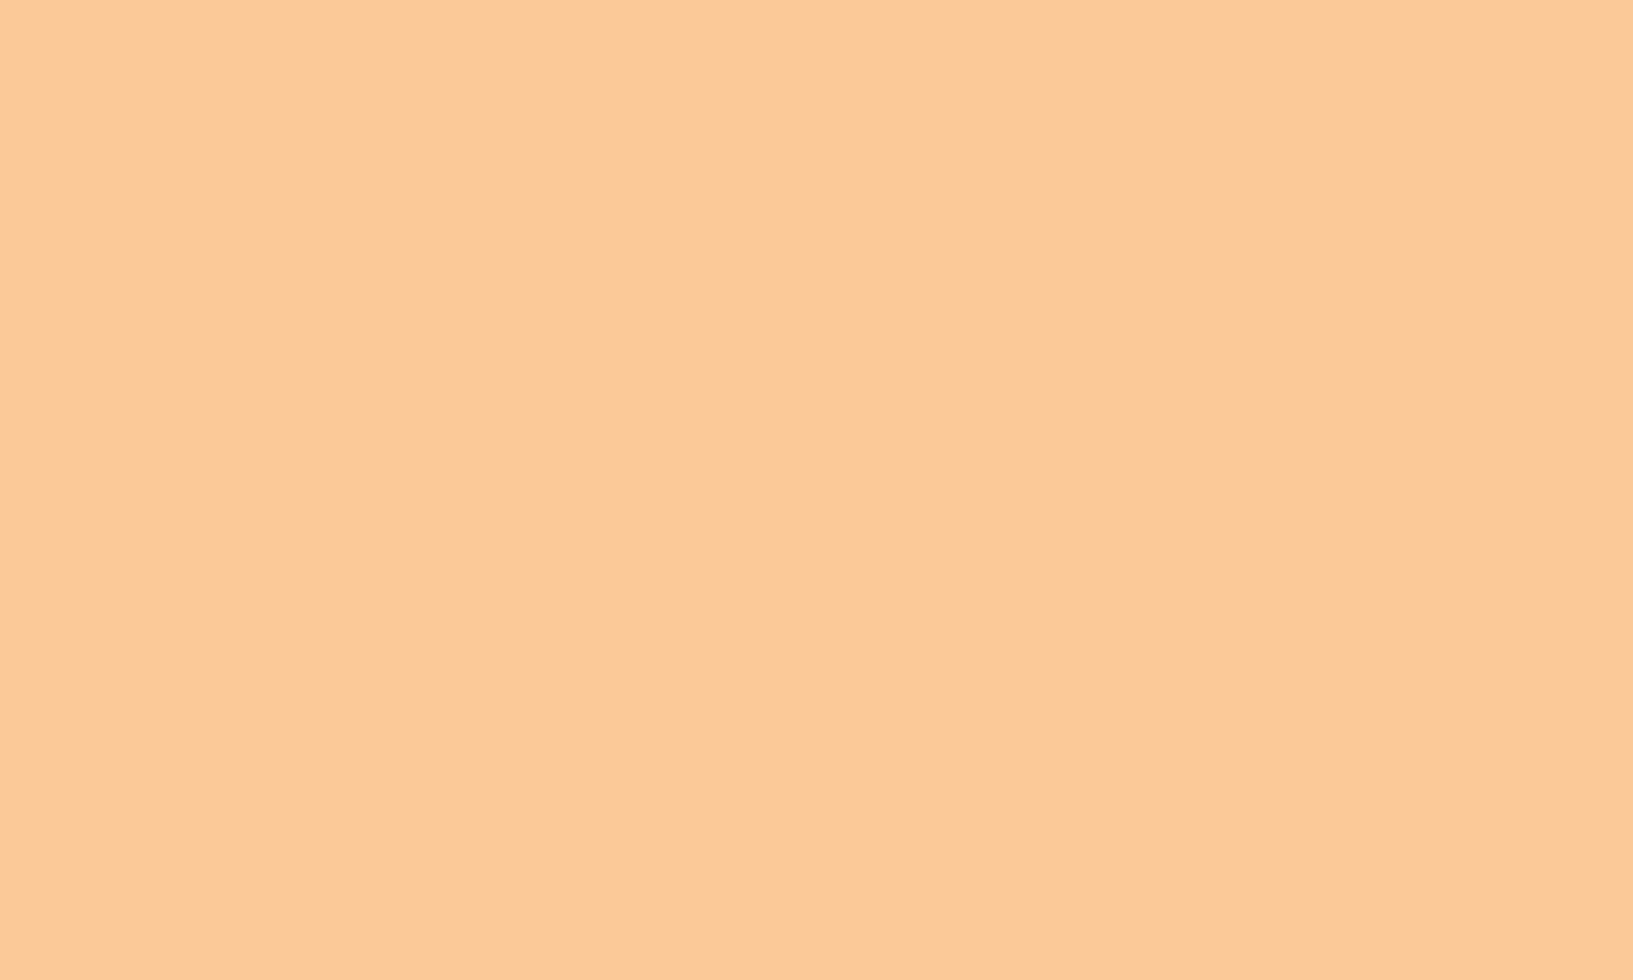 Pastel orange: Sắc cam nhạt đầy trẻ trung và tươi mới, chắc chắn sẽ là sự lựa chọn hoàn hảo cho những người yêu màu sắc. Hãy cùng đắm mình vào những thế giới một màu khi chiêm ngưỡng bức tranh pastel orange tuyệt đẹp.